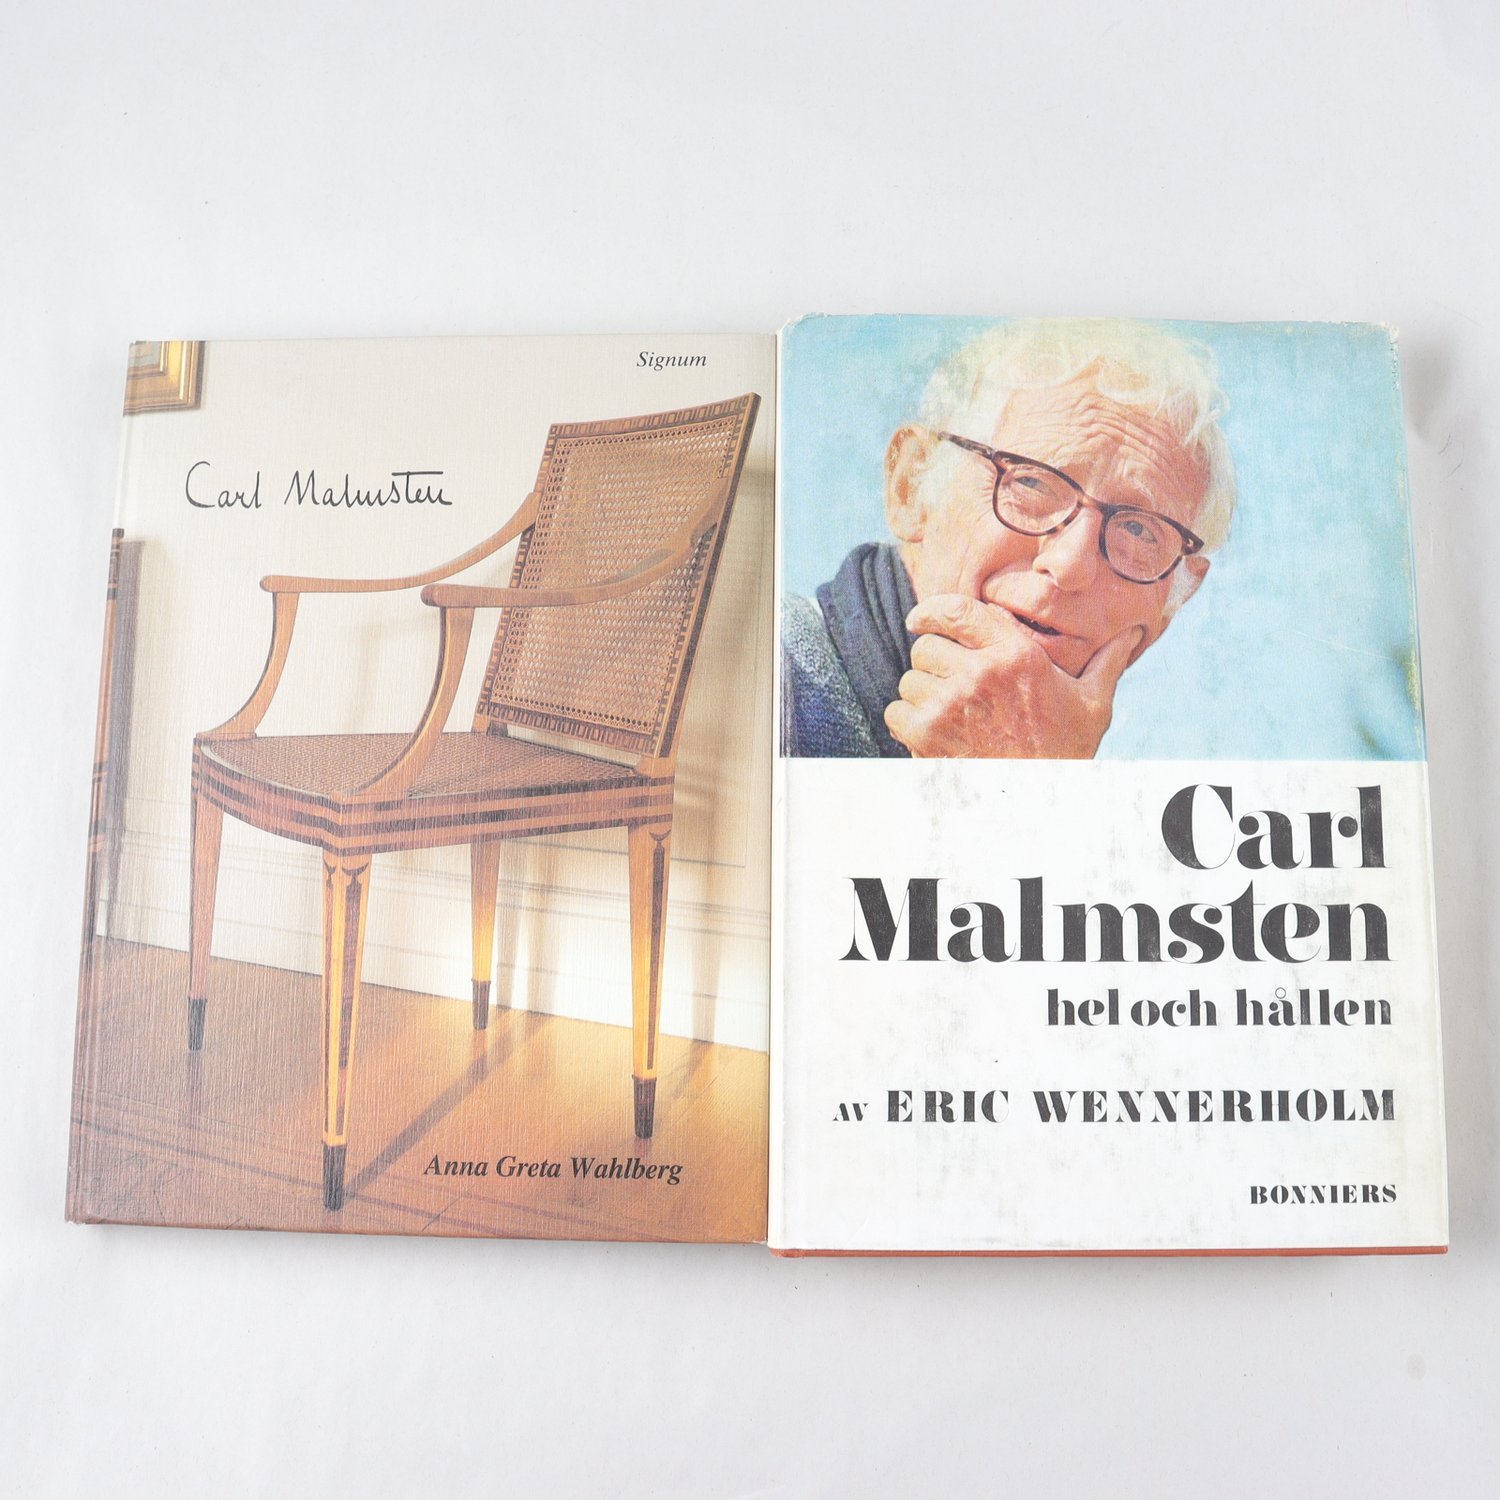 Två biografier om Carl Malmsten, av Eric Wennerholm & Anna Greta Wahlberg